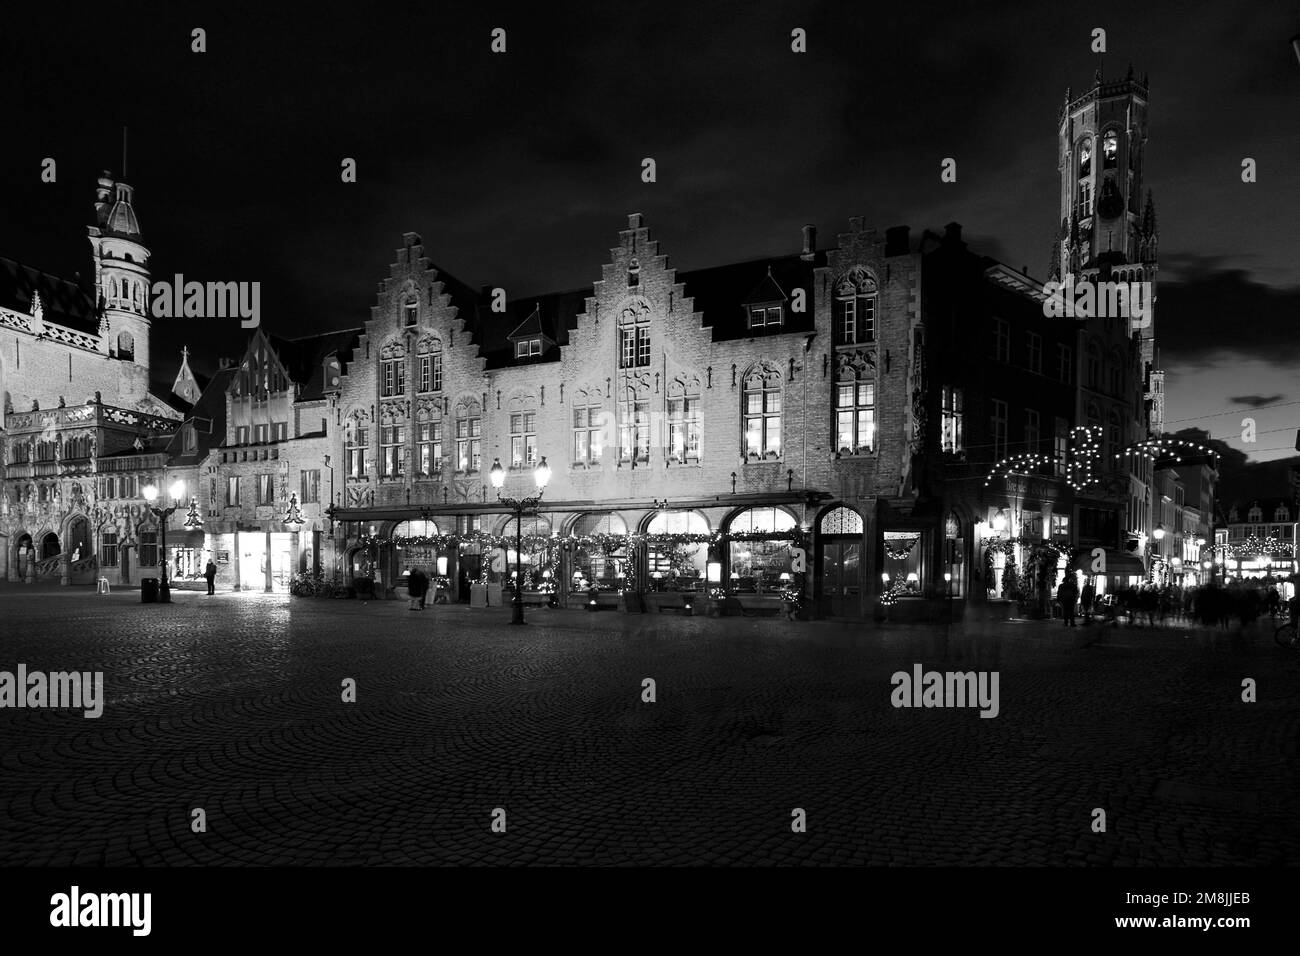 Decorazioni natalizie su edifici intorno alla piazza Burg e alla torre Belfort, ( Belfry ), Bruges City, Fiandre Occidentali, Regione fiamminga del Belgio. Foto Stock